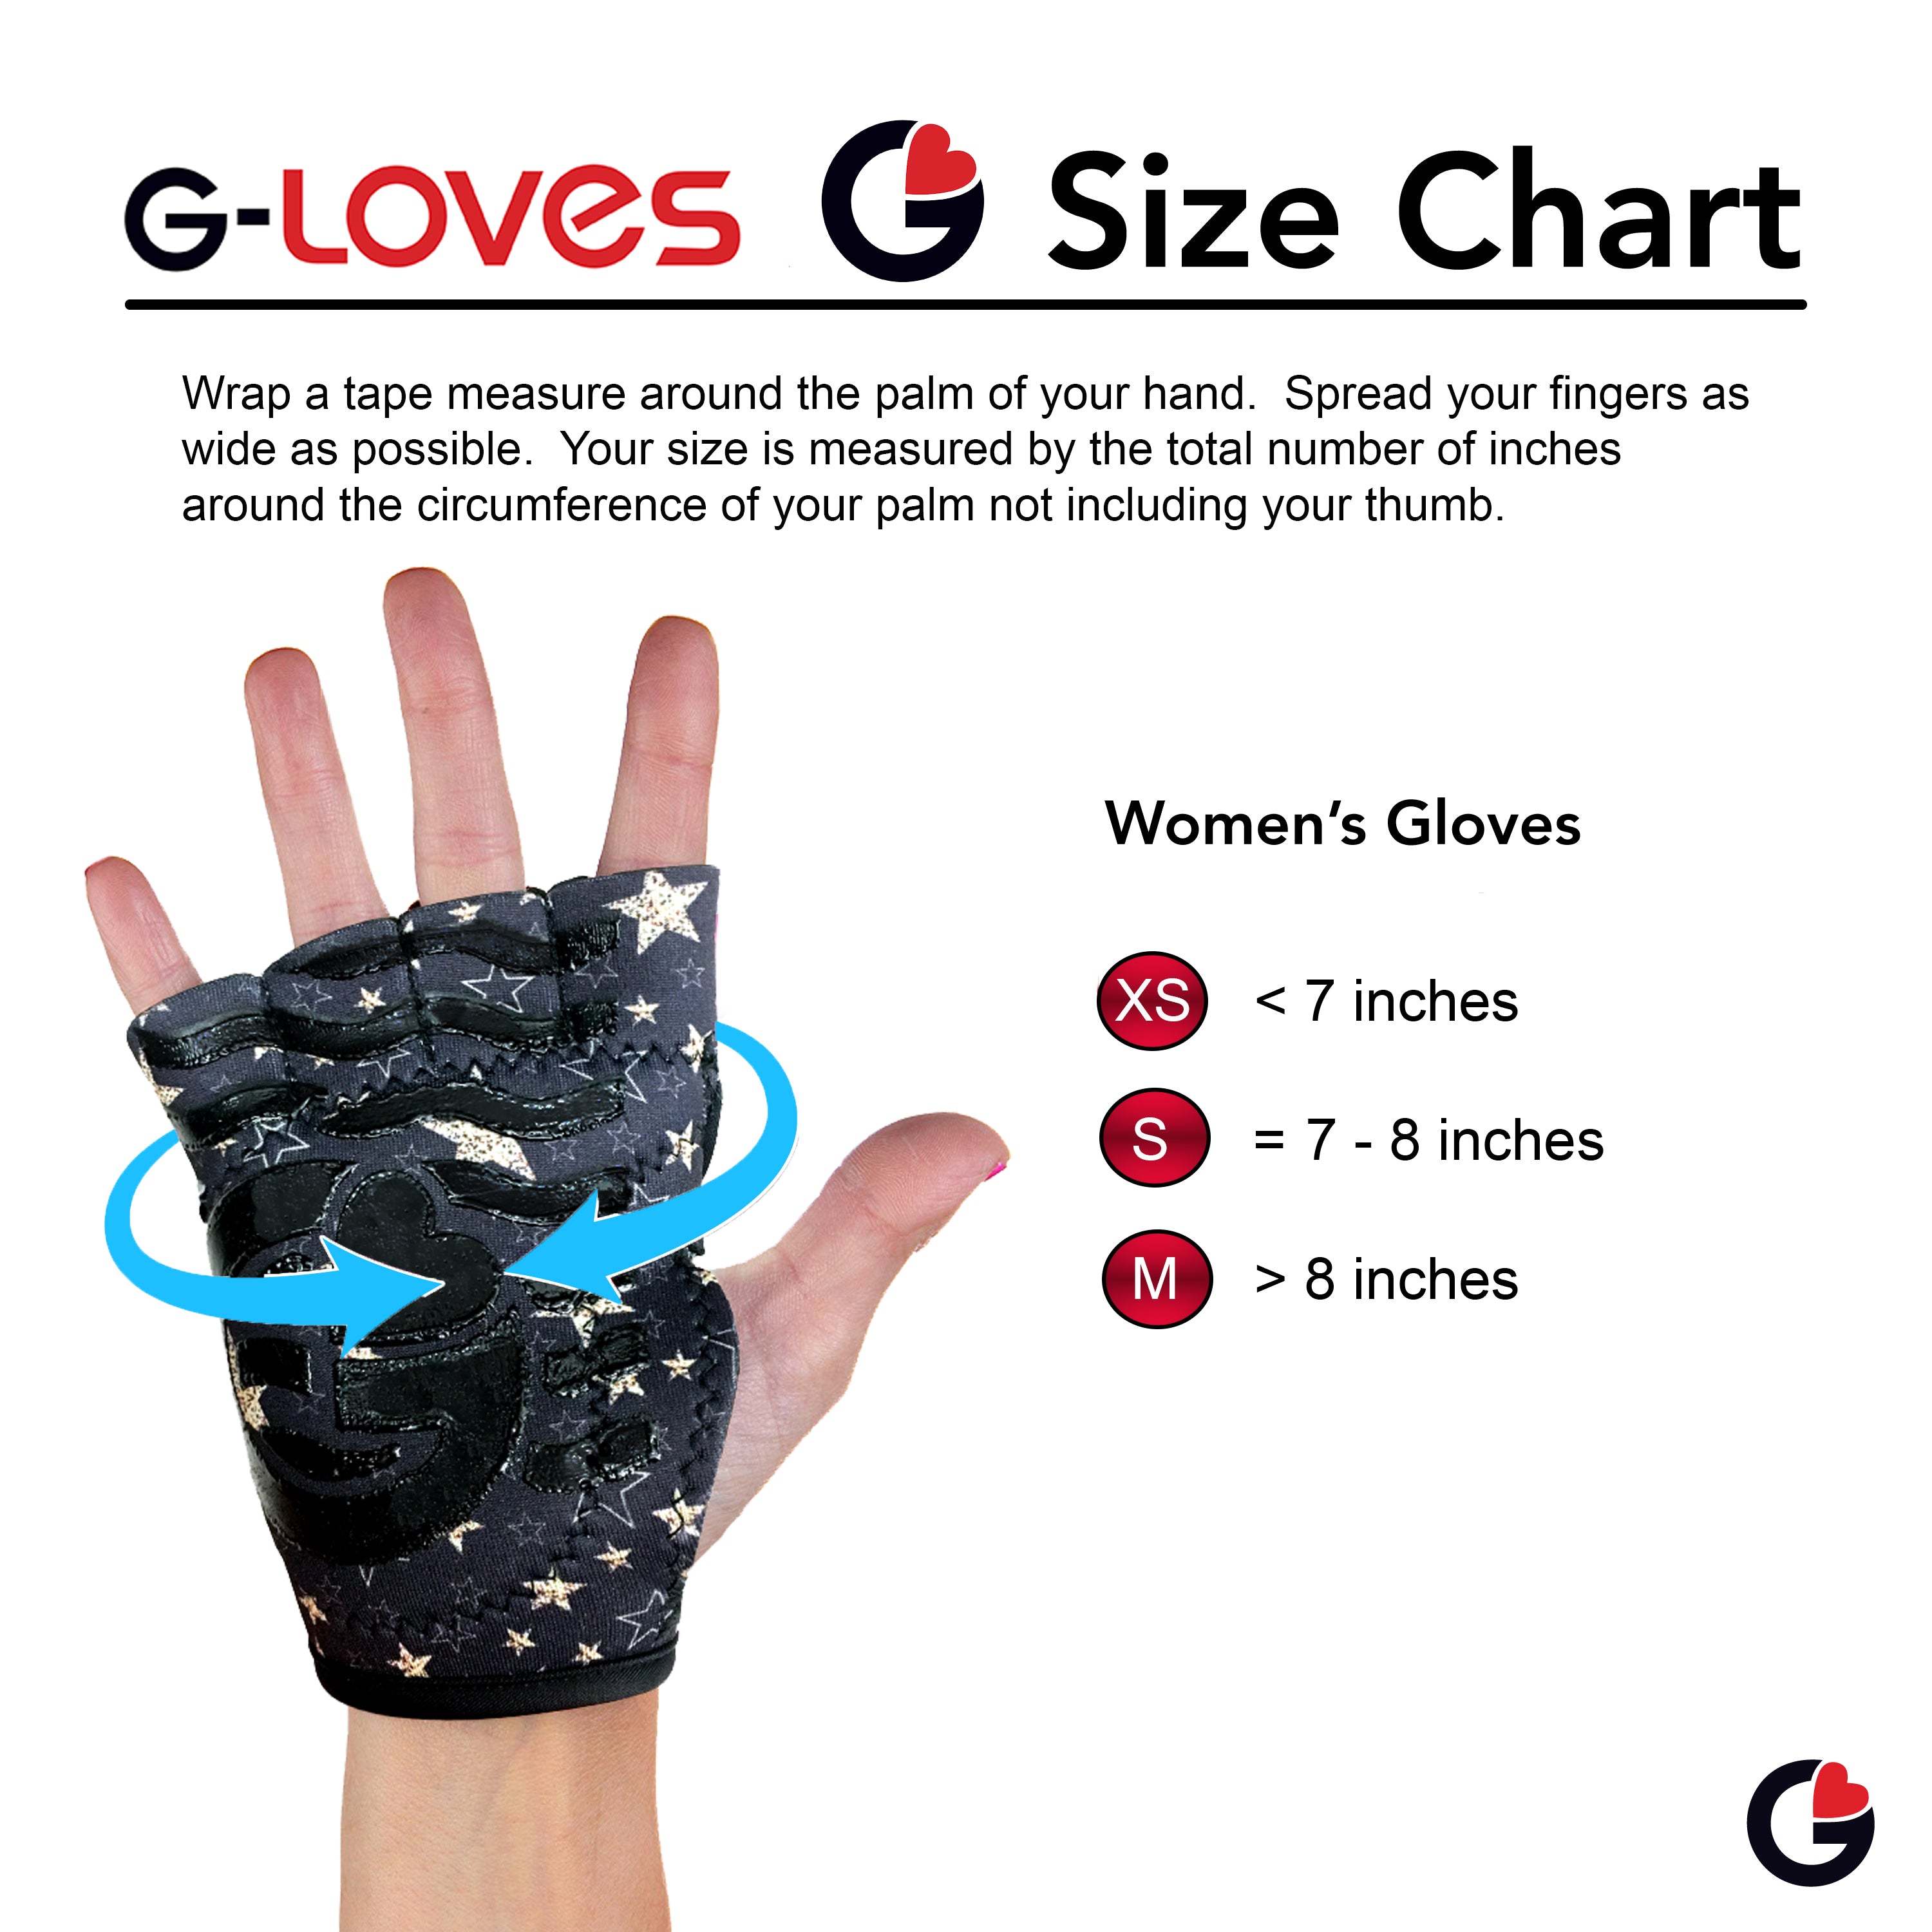 Women's Pop Art Gloves